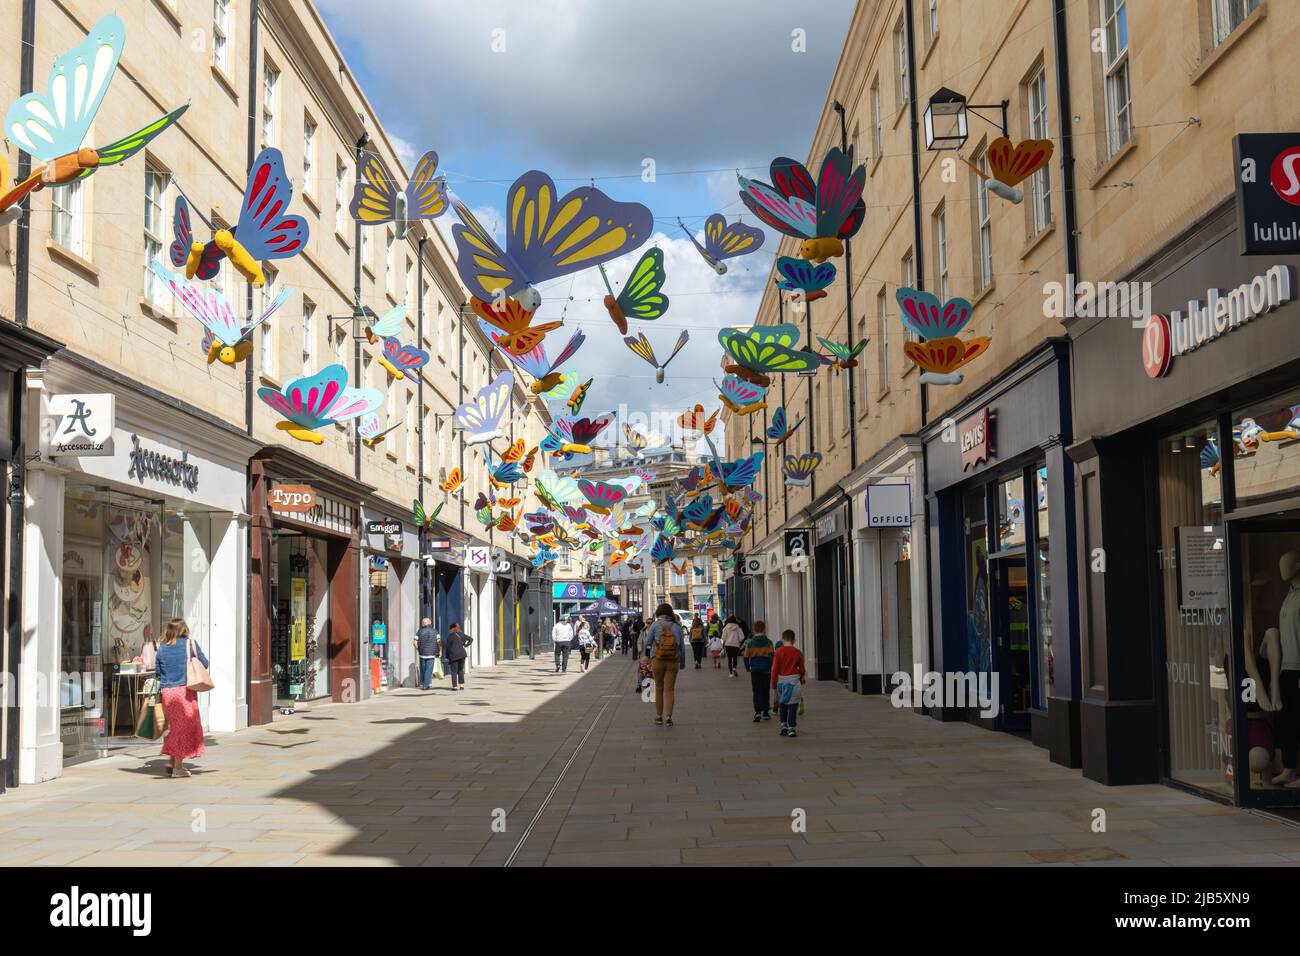 Papillons aux couleurs vives suspendus dans les airs au-dessus des acheteurs dans le centre commercial Southgate, ville de Bath, Somerset, Angleterre, Royaume-Uni Banque D'Images